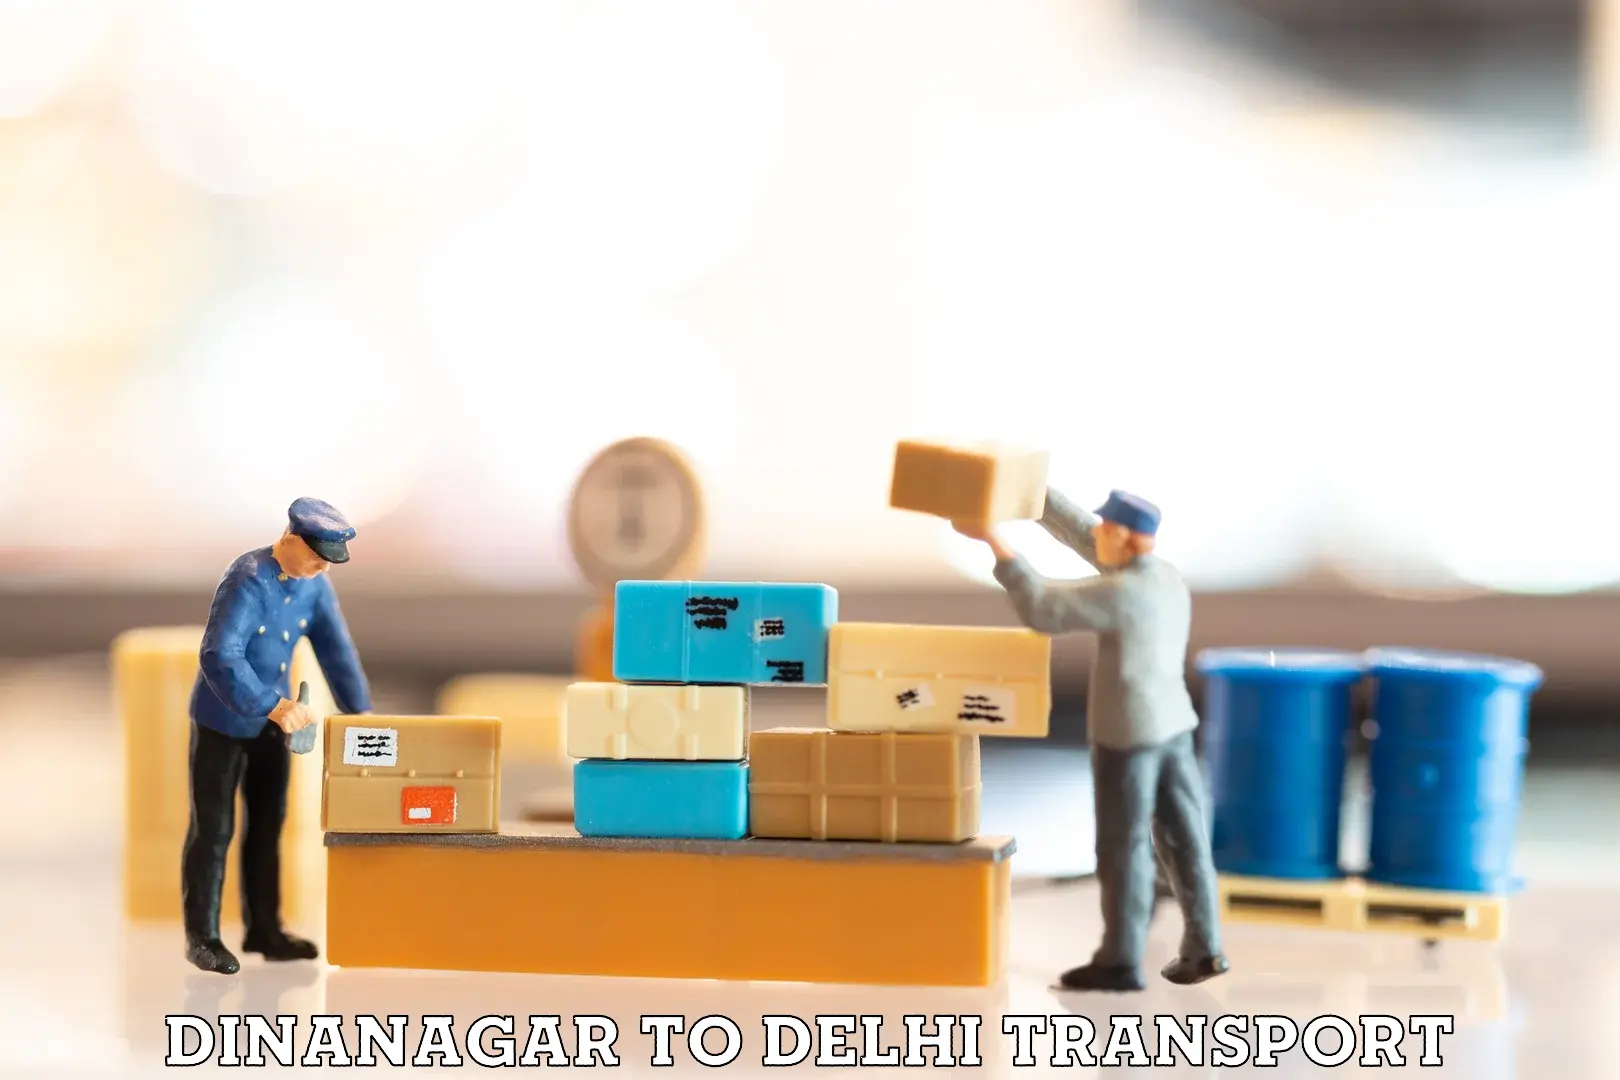 International cargo transportation services Dinanagar to Delhi Technological University DTU